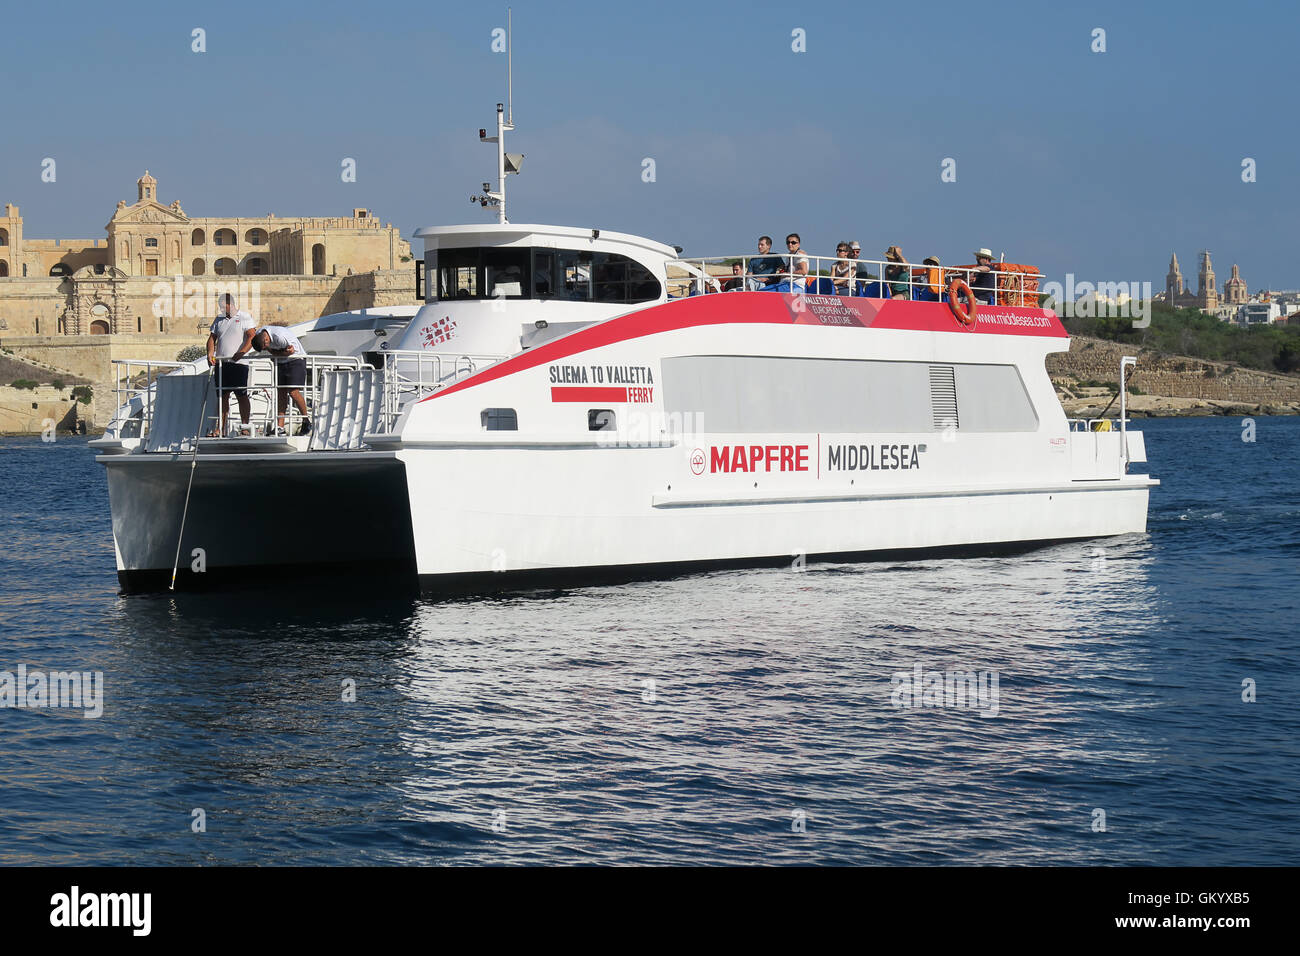 VALLETTA, MALTA. AUGUST 03, 2016: Sliema Valletta ferry approaching dock. Stock Photo